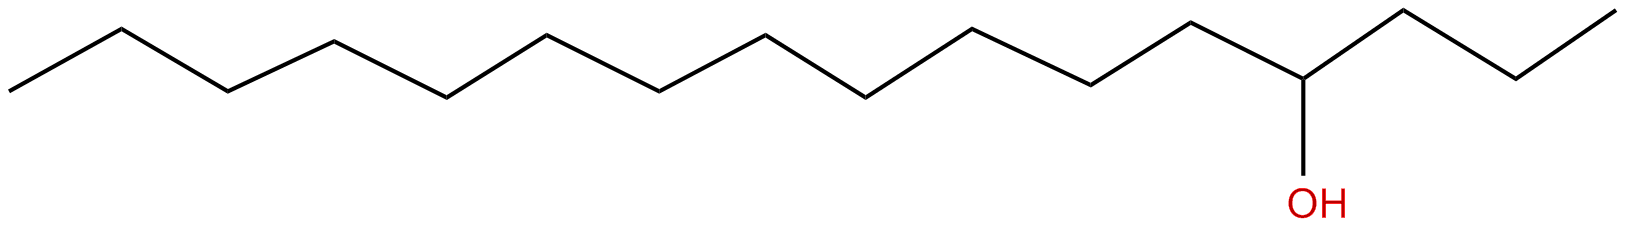 Image of 4-hexadecanol